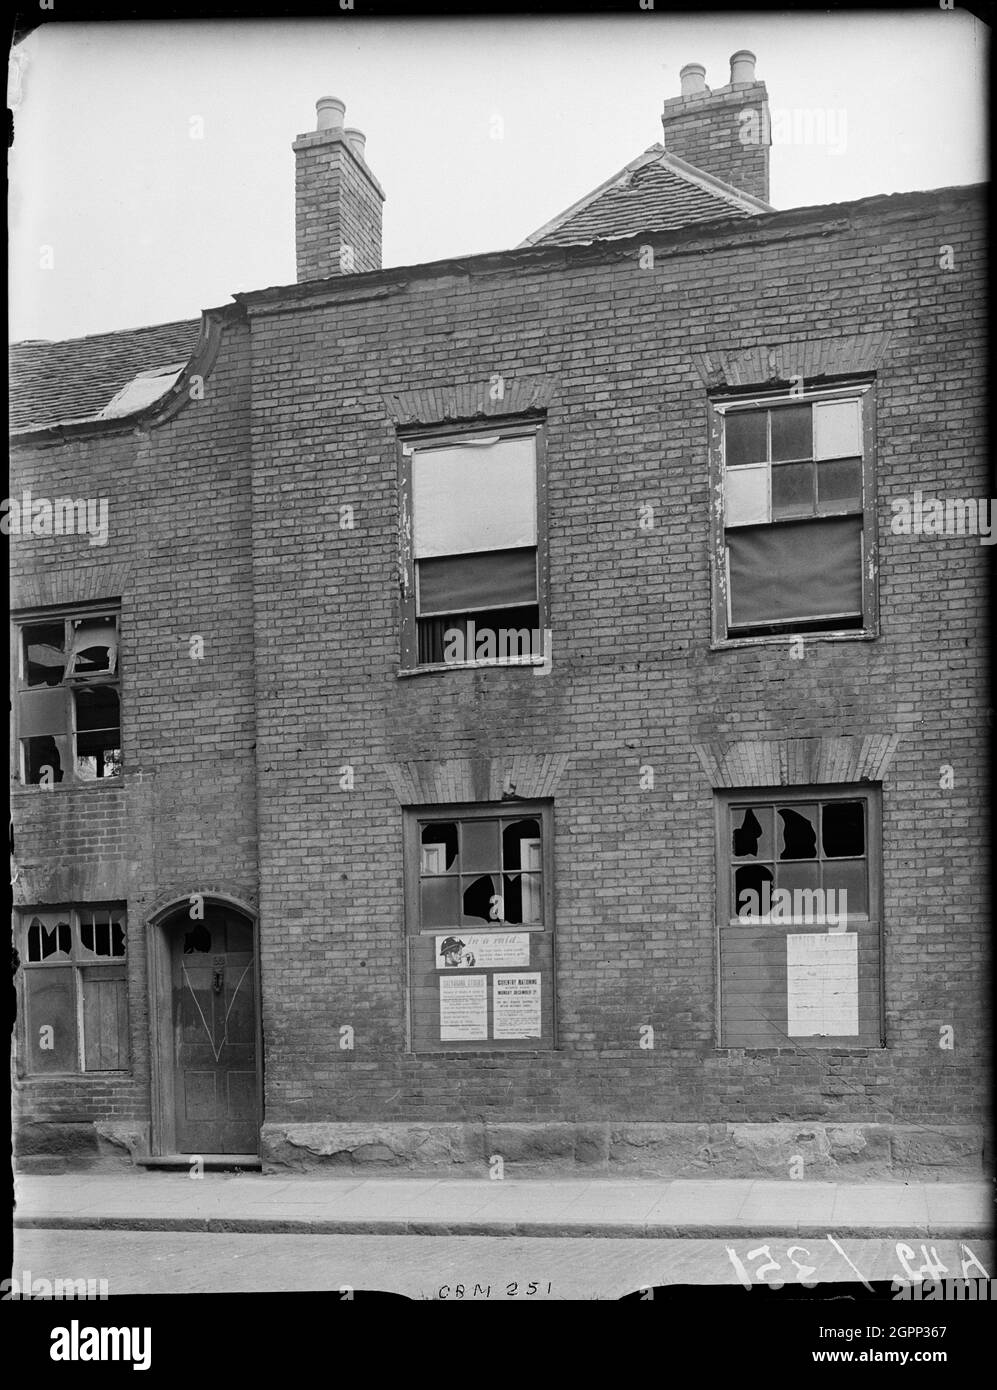 Little Park Street, Coventry, 1941. L'esterno di 92 Little Park Street mostra danni bomba alla facciata e avvisi relativi al razionamento e incursioni d'aria apparsi sulle tavole che coprono le finestre rotte. Il centro di Coventry è stato devastato dalle incursioni aeree nel novembre 1940. I bombardamenti lasciarono la cattedrale in rovina e distrussero gran parte del tessuto storico della città. Gran parte di Little Park Street è stata demolita. La Corte dei Magistrati occupa ora il sito di questa casa. Foto Stock